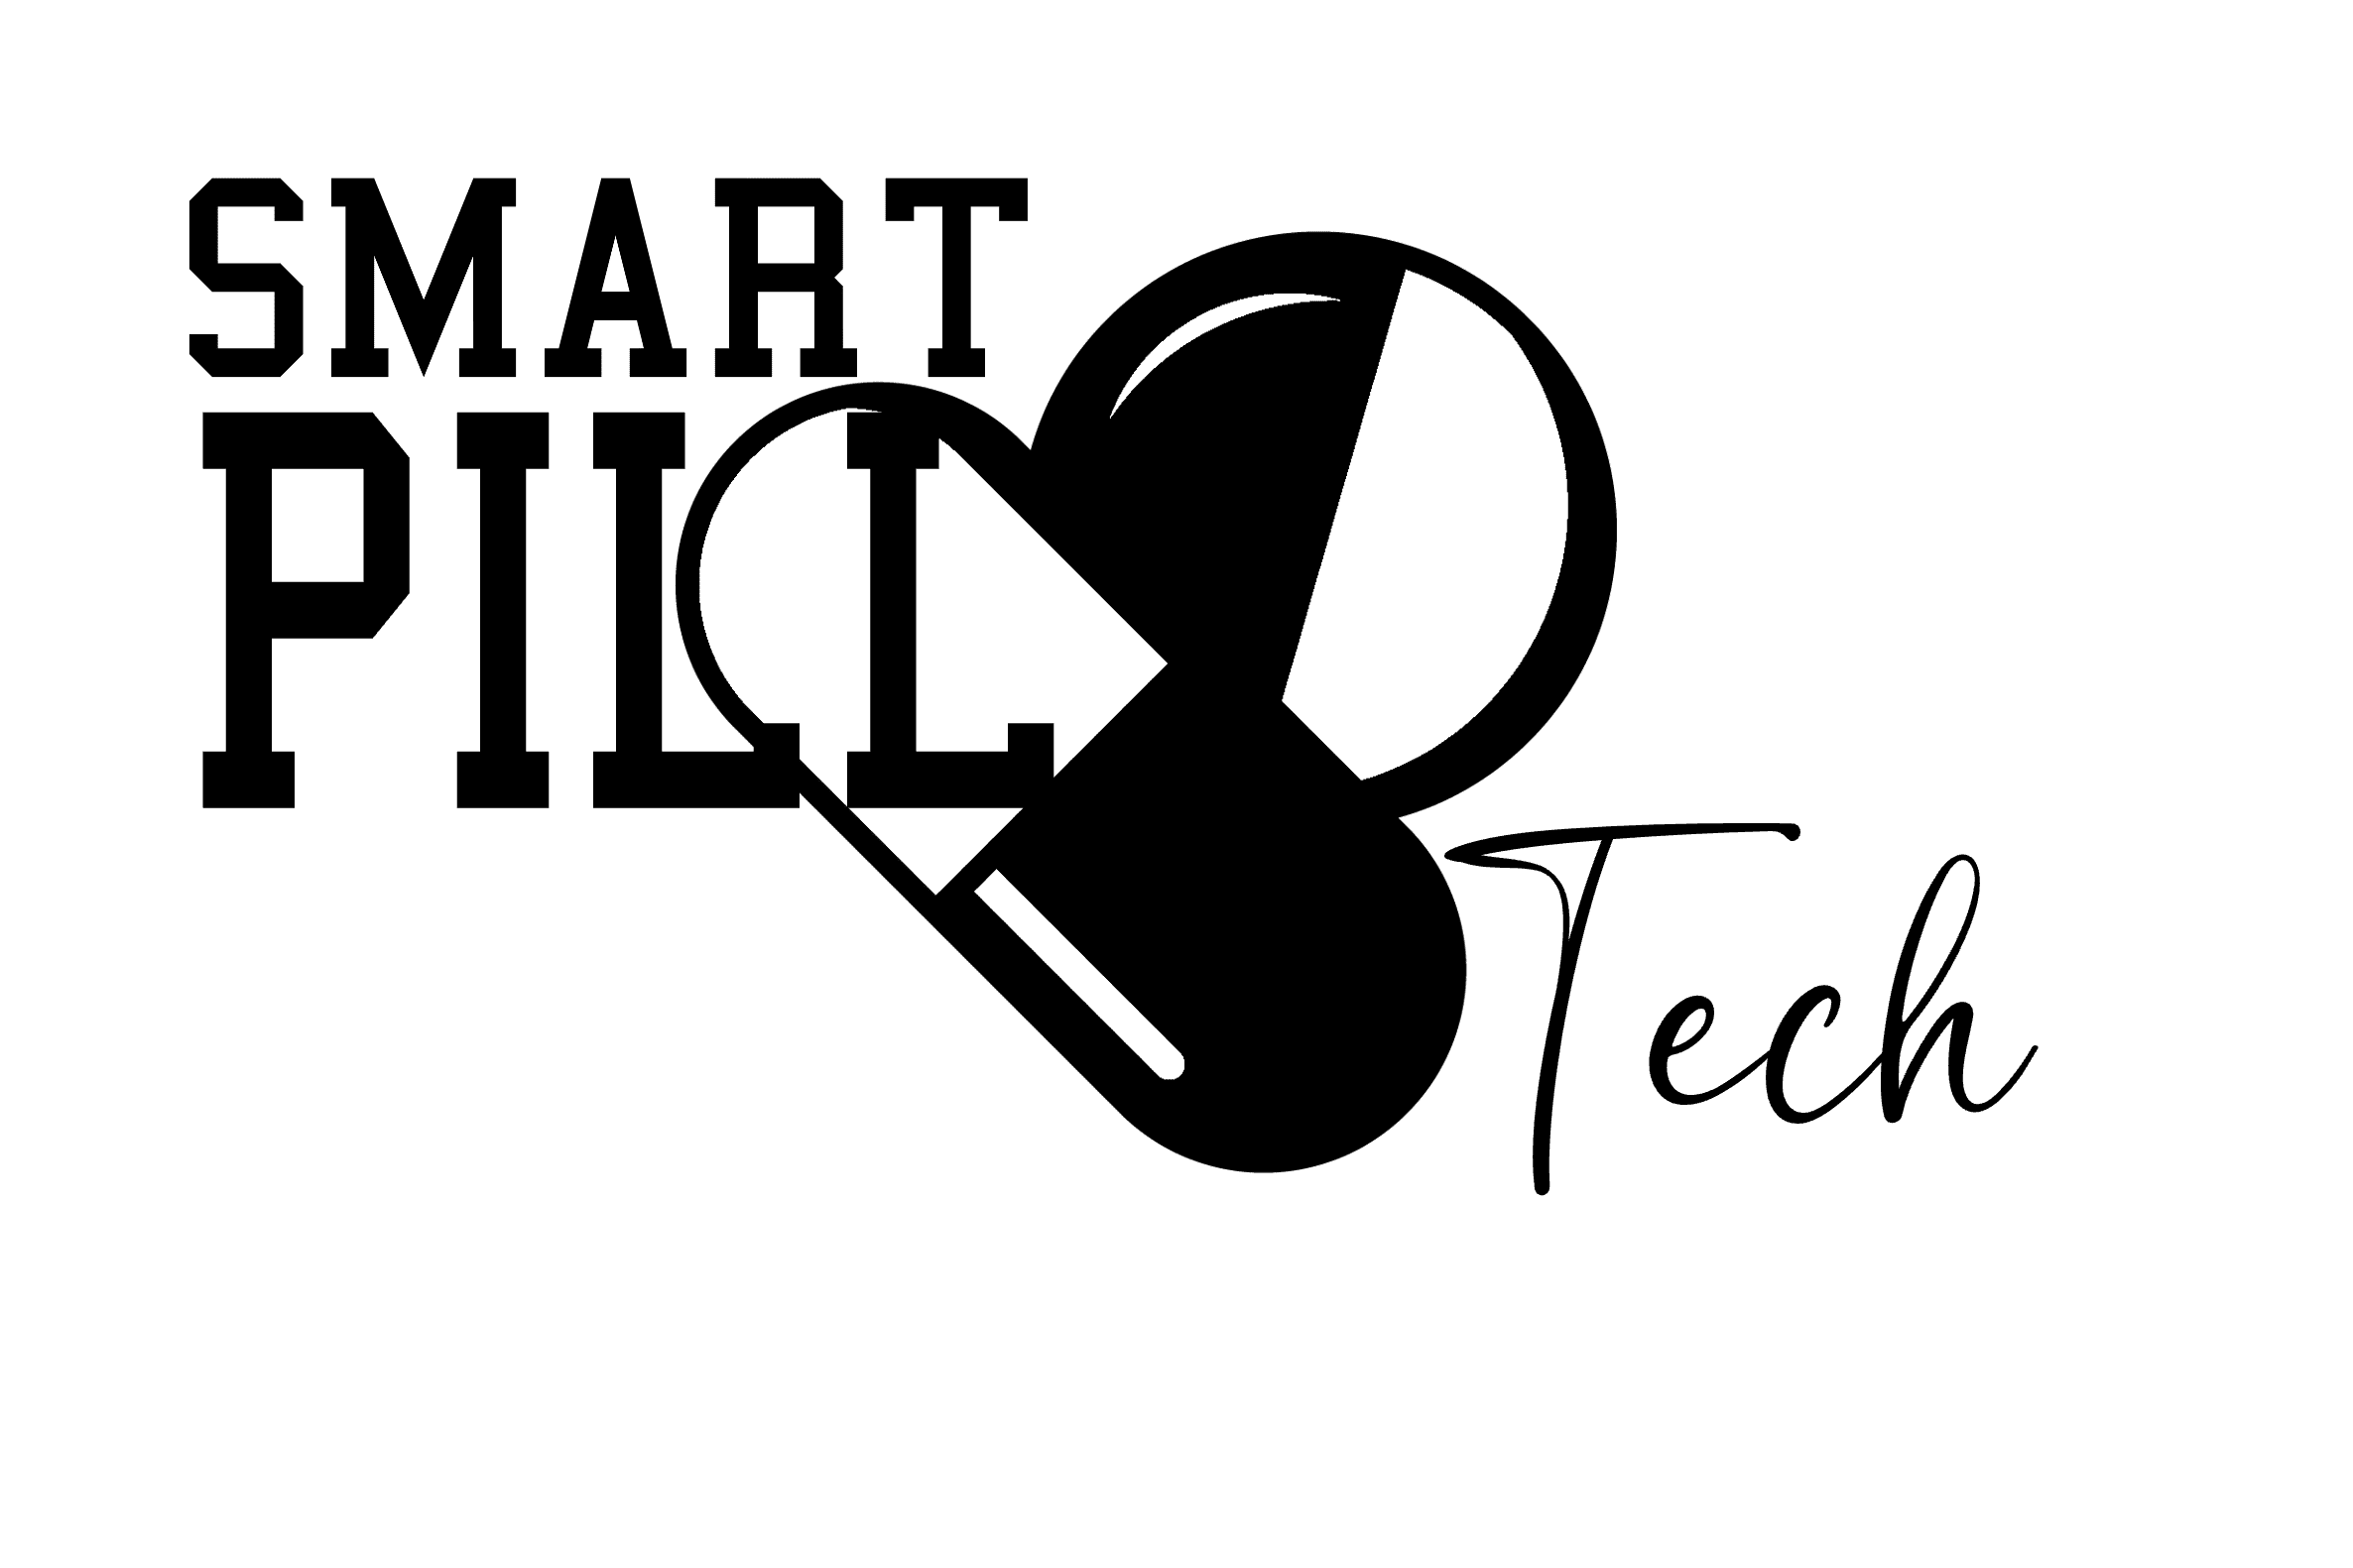 Smart Pill Tech, LLC